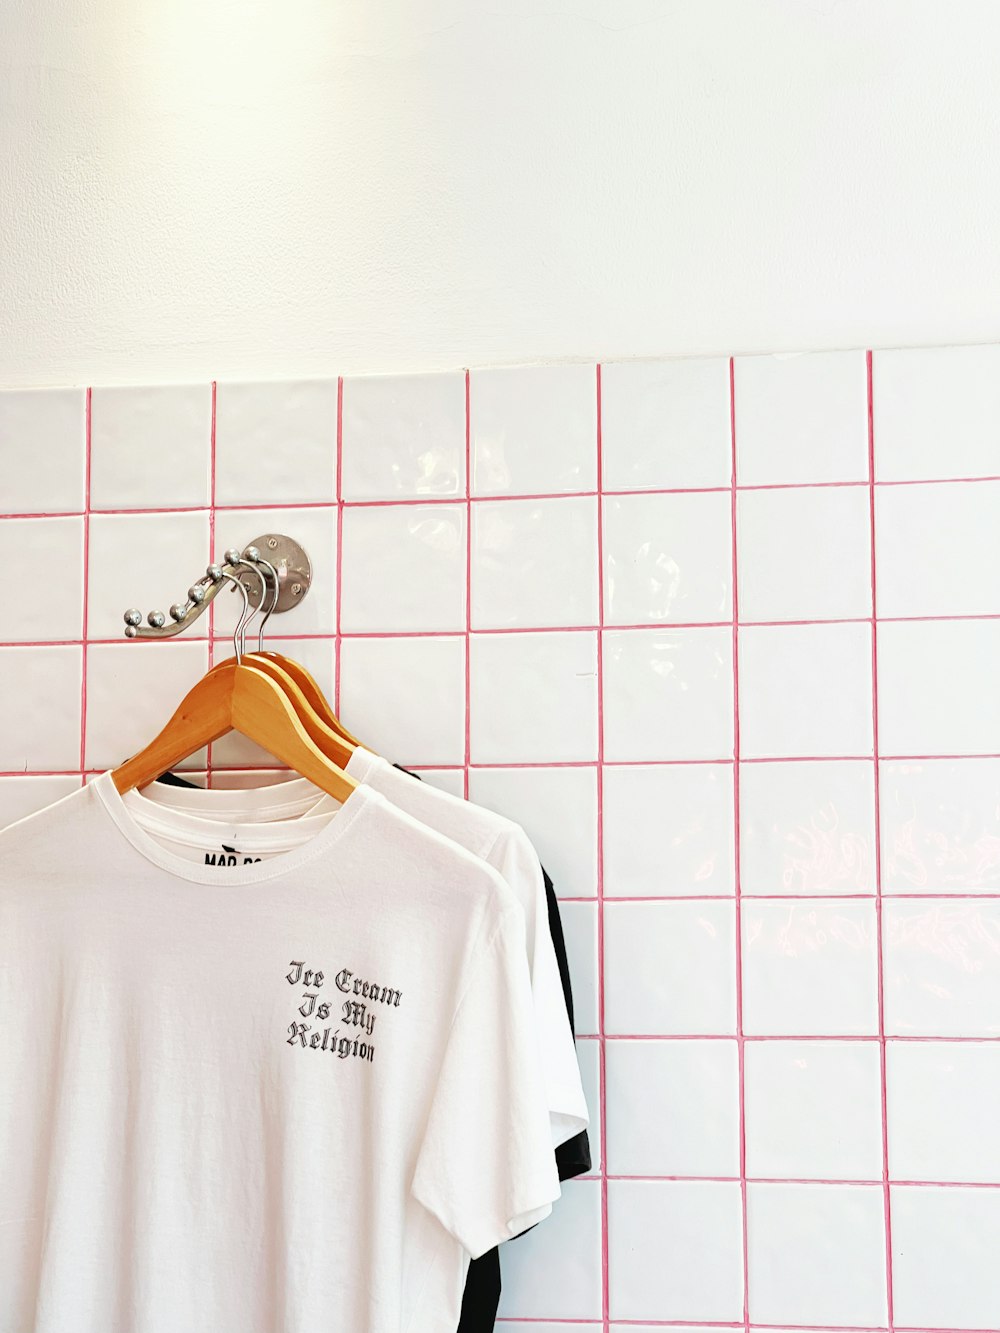 Una camisa blanca en una pared